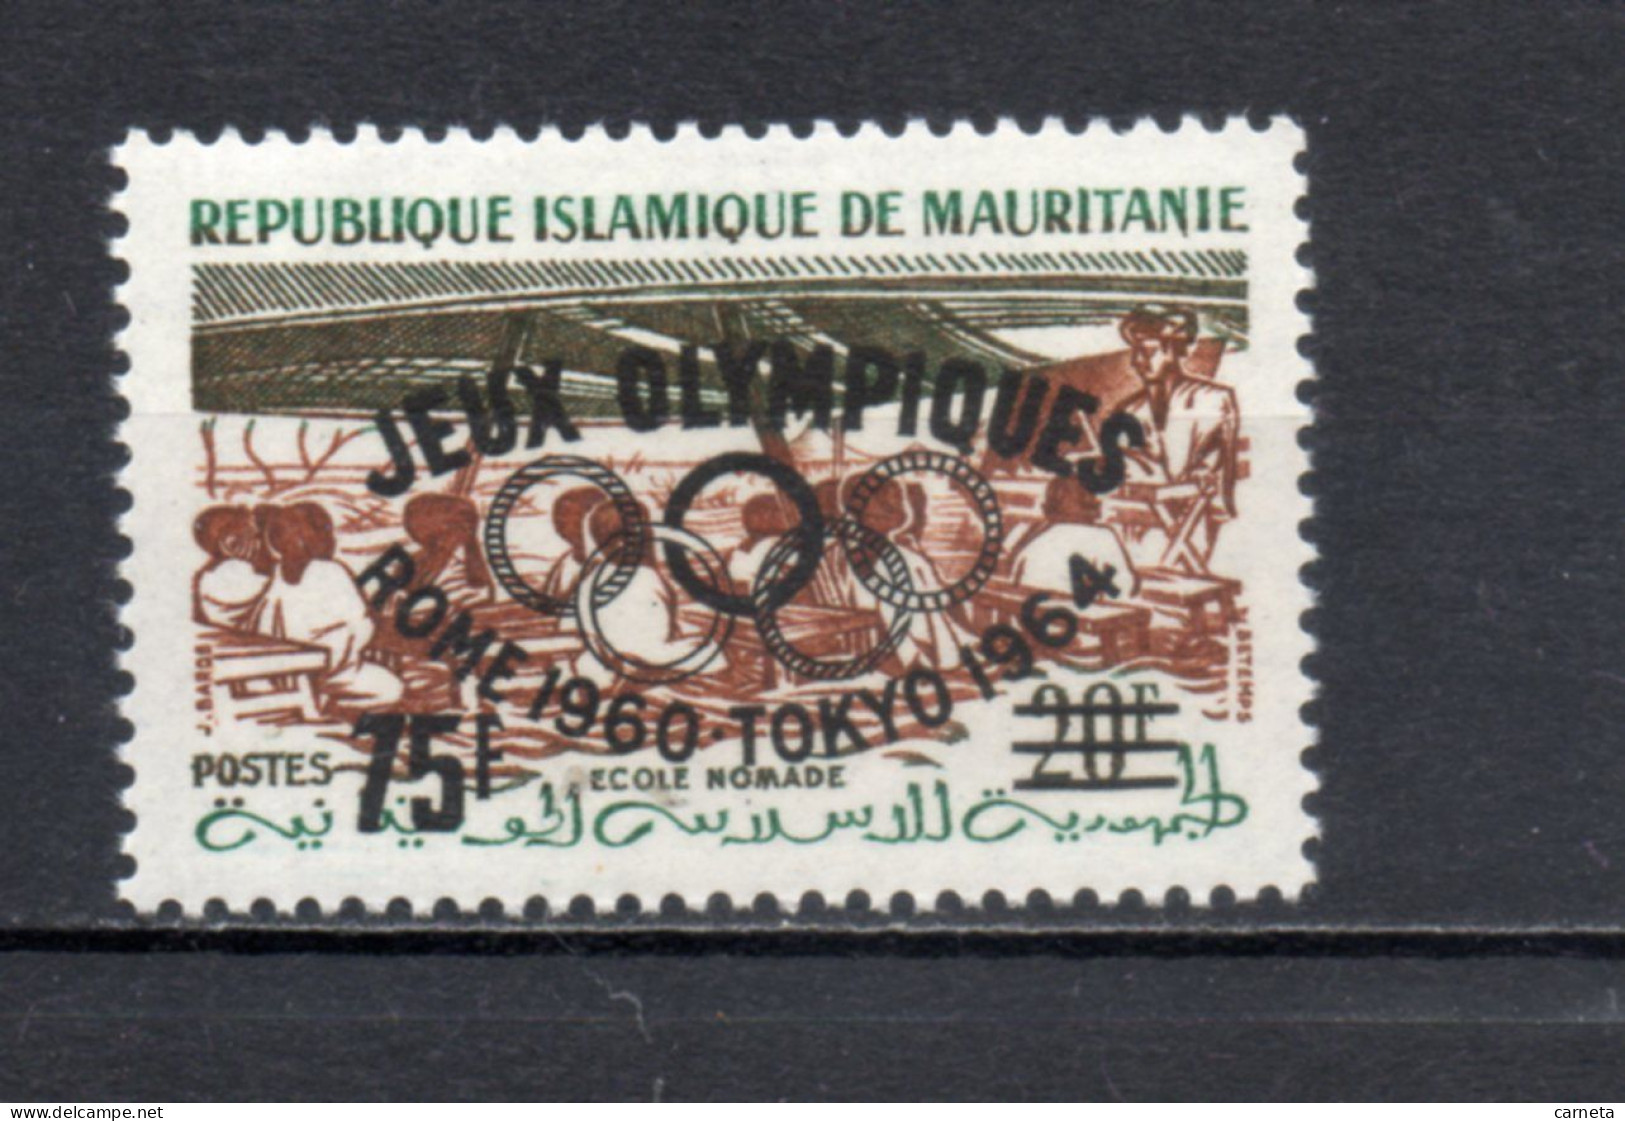 MAURITANIE  N° 154D   NEUF SANS CHARNIERE   COTE 10.50€    ECOLE NOMADE JEUX OLYMPIQUES TOKYO - Mauretanien (1960-...)